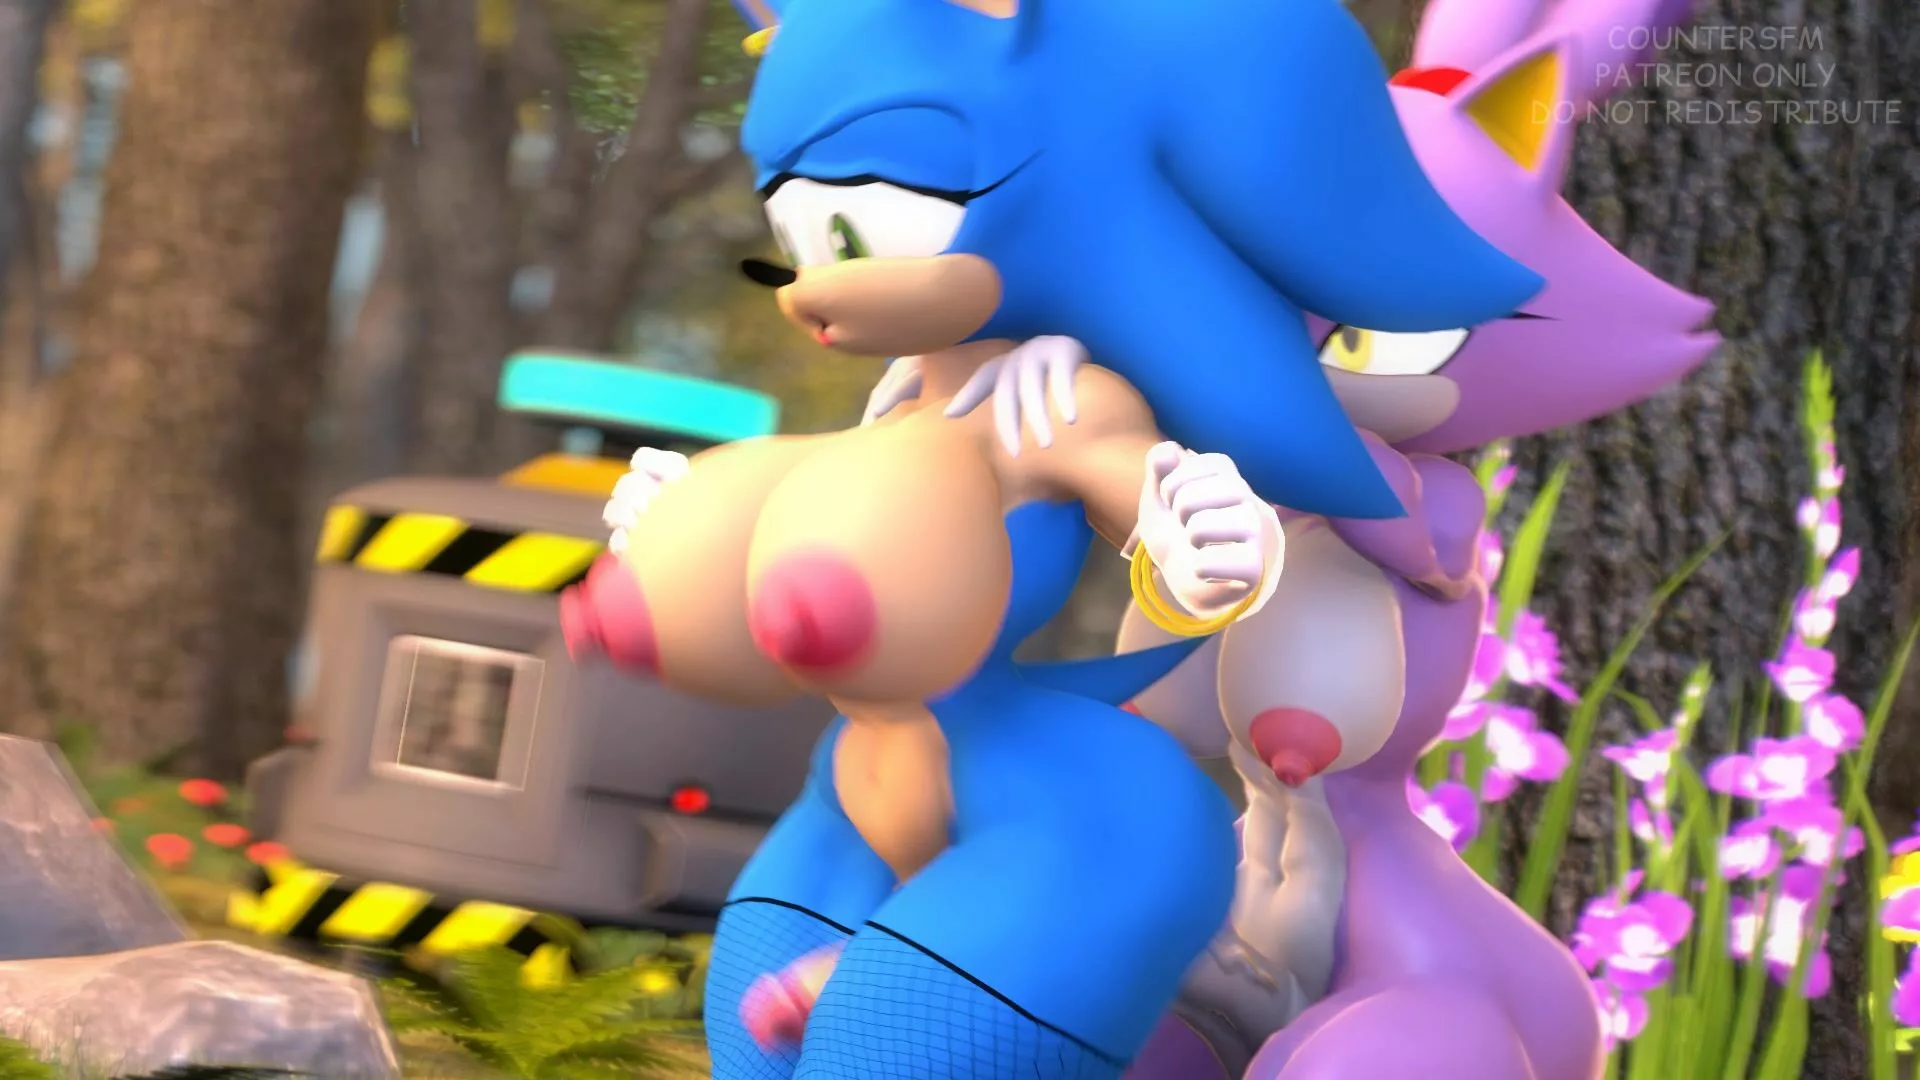 Sonic Blaze Porn - Fem Sonic X Futa Blaze [CounterSFM]